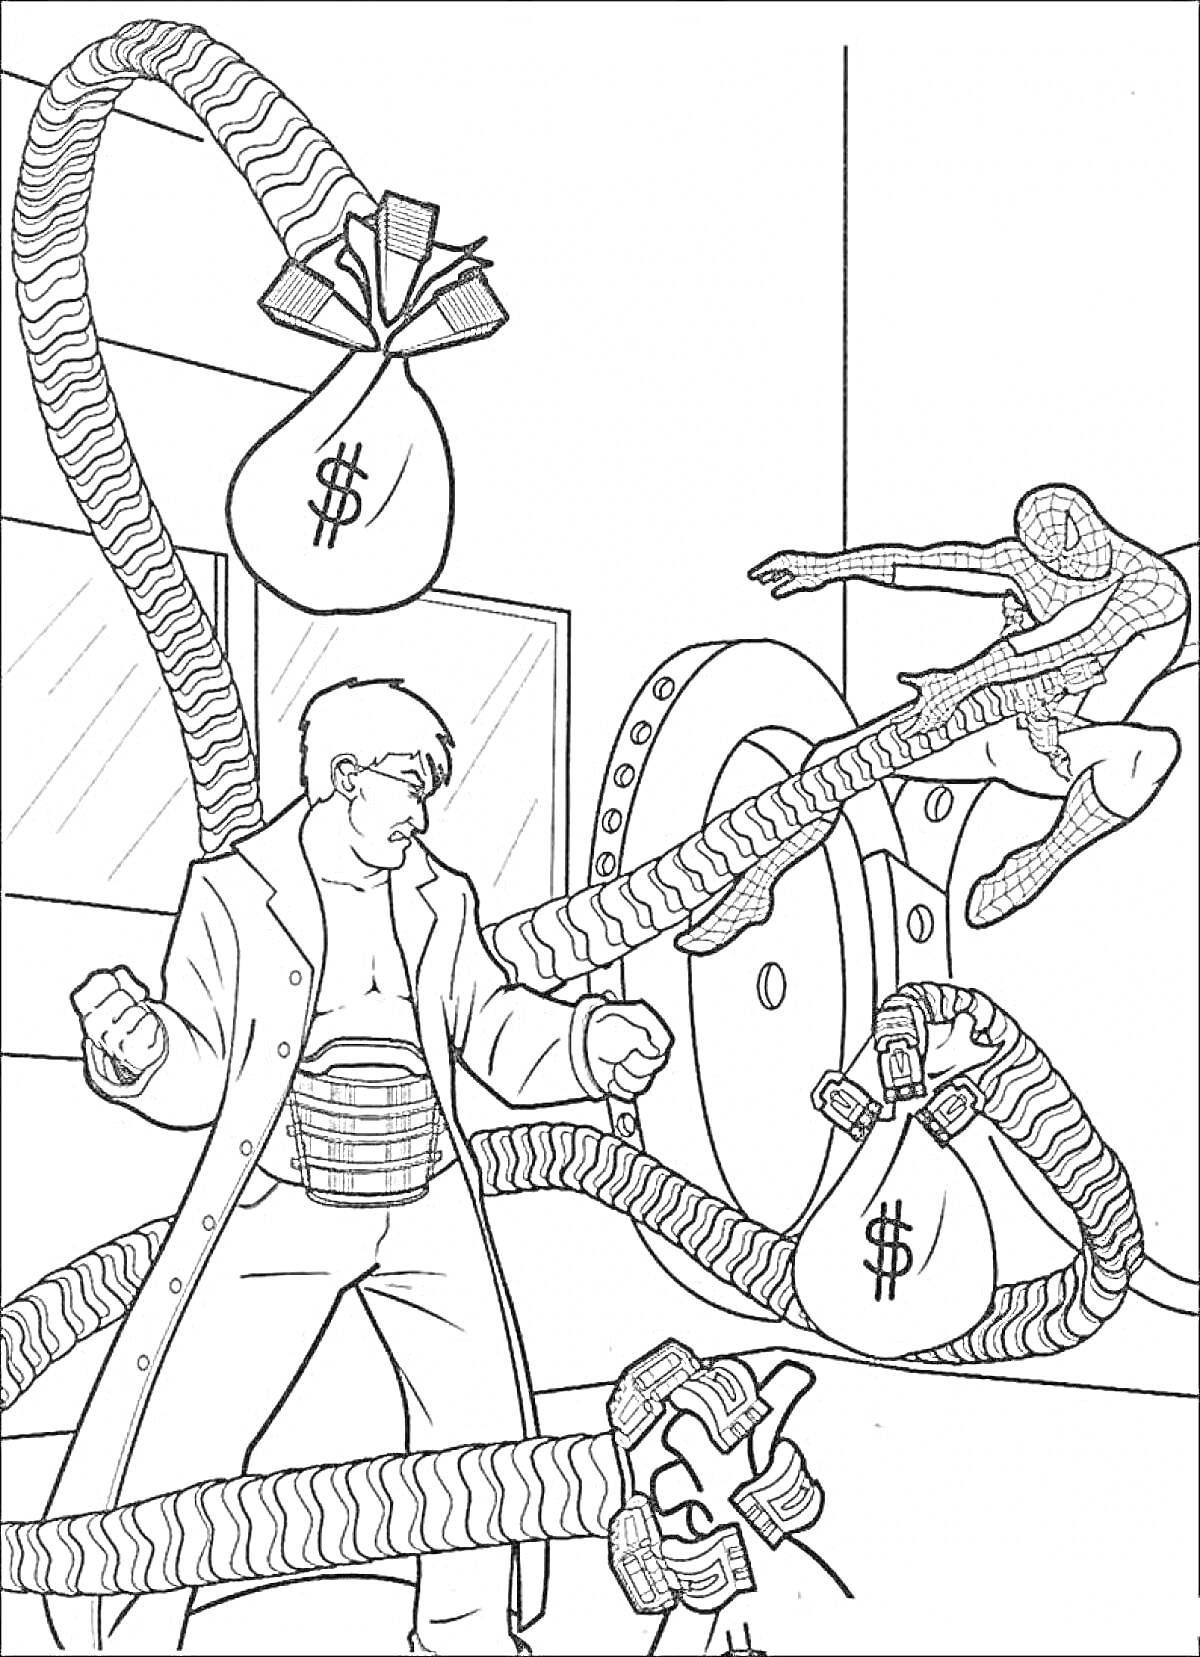  Доктор Осьминог с деньгами, сражается с человеком-пауком у сейфа